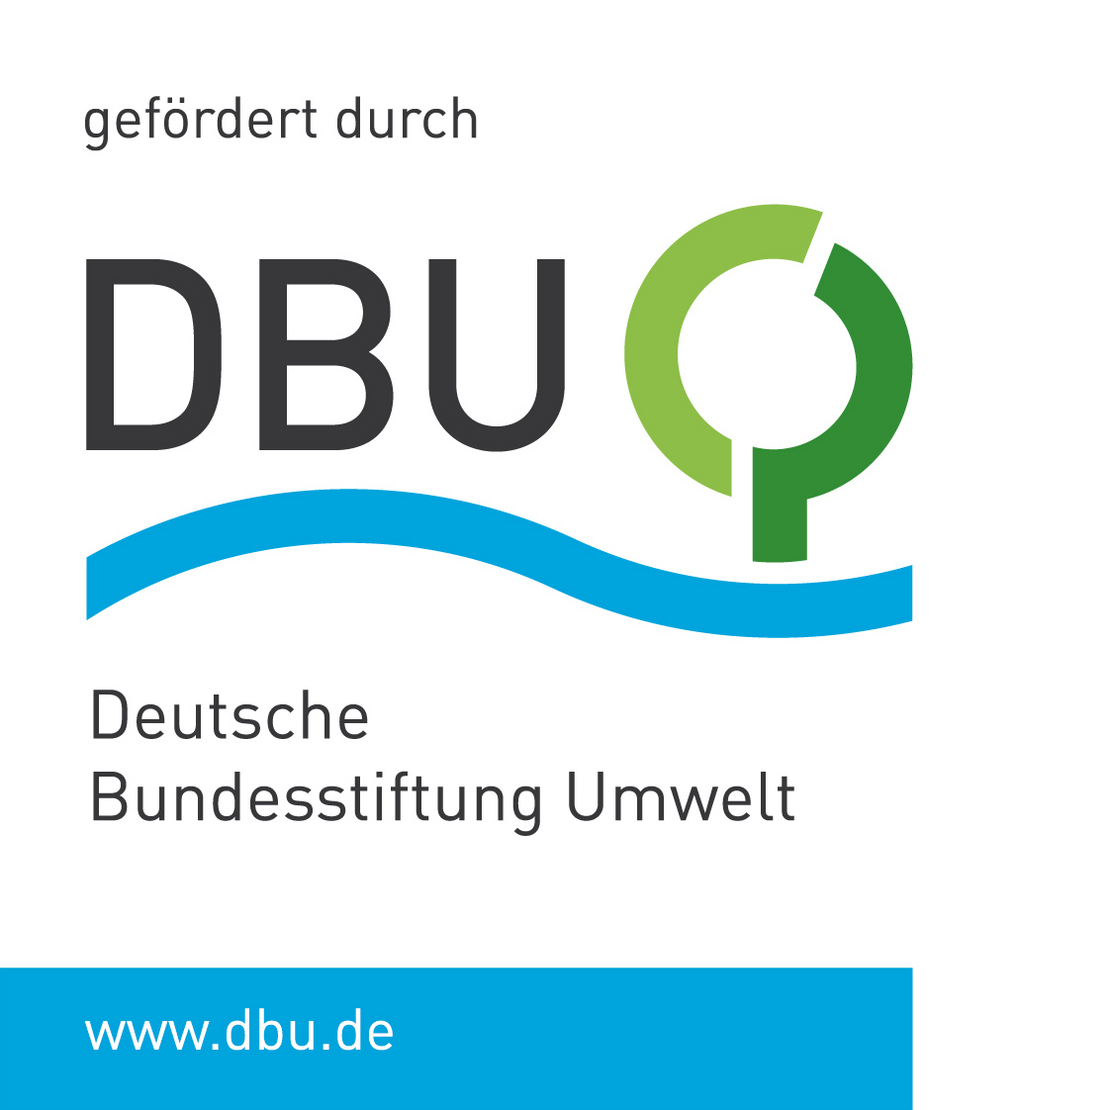 gefördert durch Deutsche Bundesstiftung Umwelt (DBU)